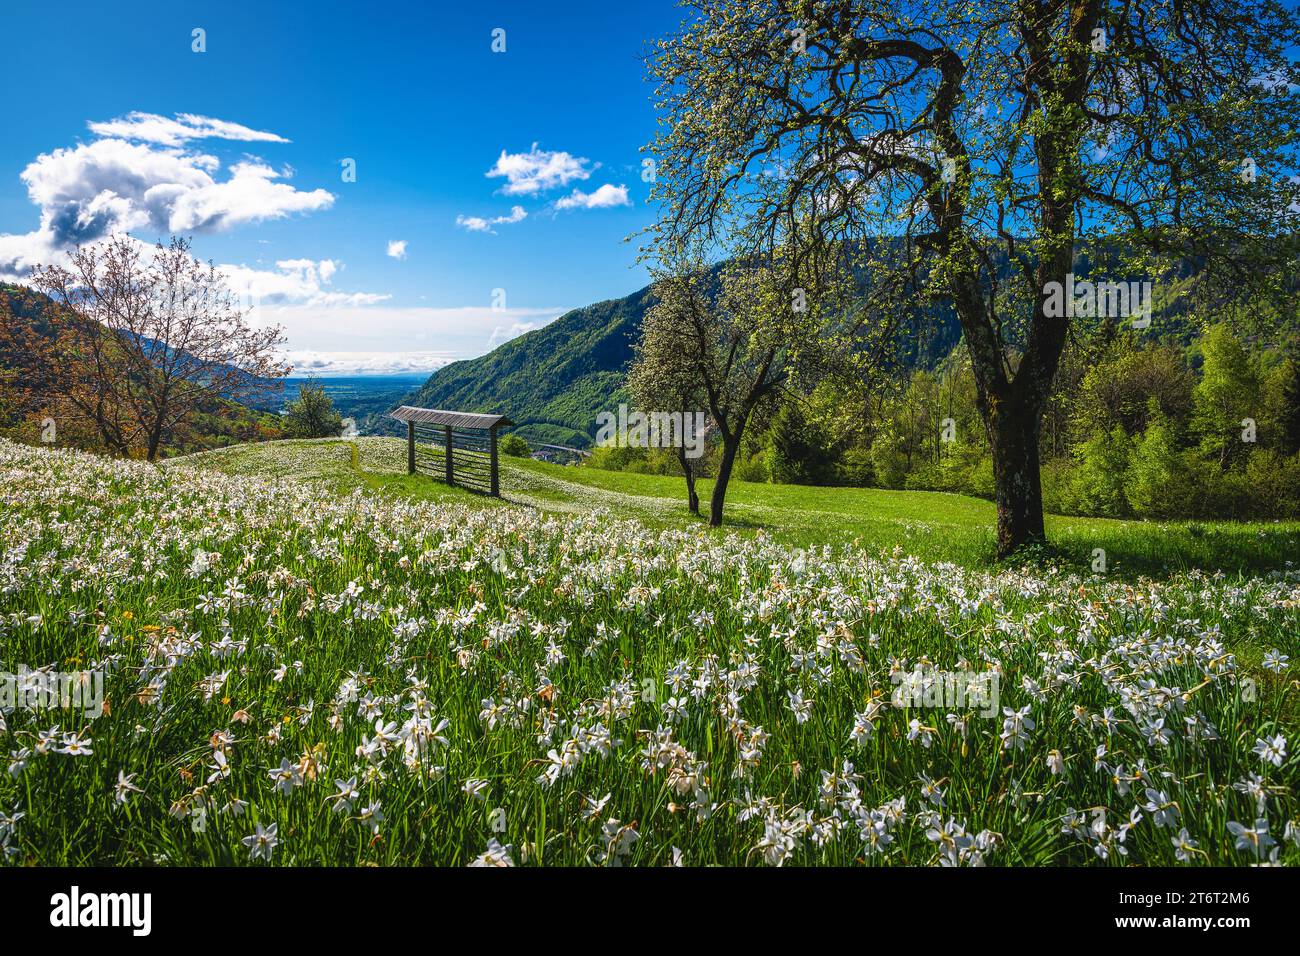 Belles collines fleuries avec jonquilles blanches fleuries et râtelier à foin en bois sur la pente, collines de Golica, Jesenice, slovénie, Europe Banque D'Images